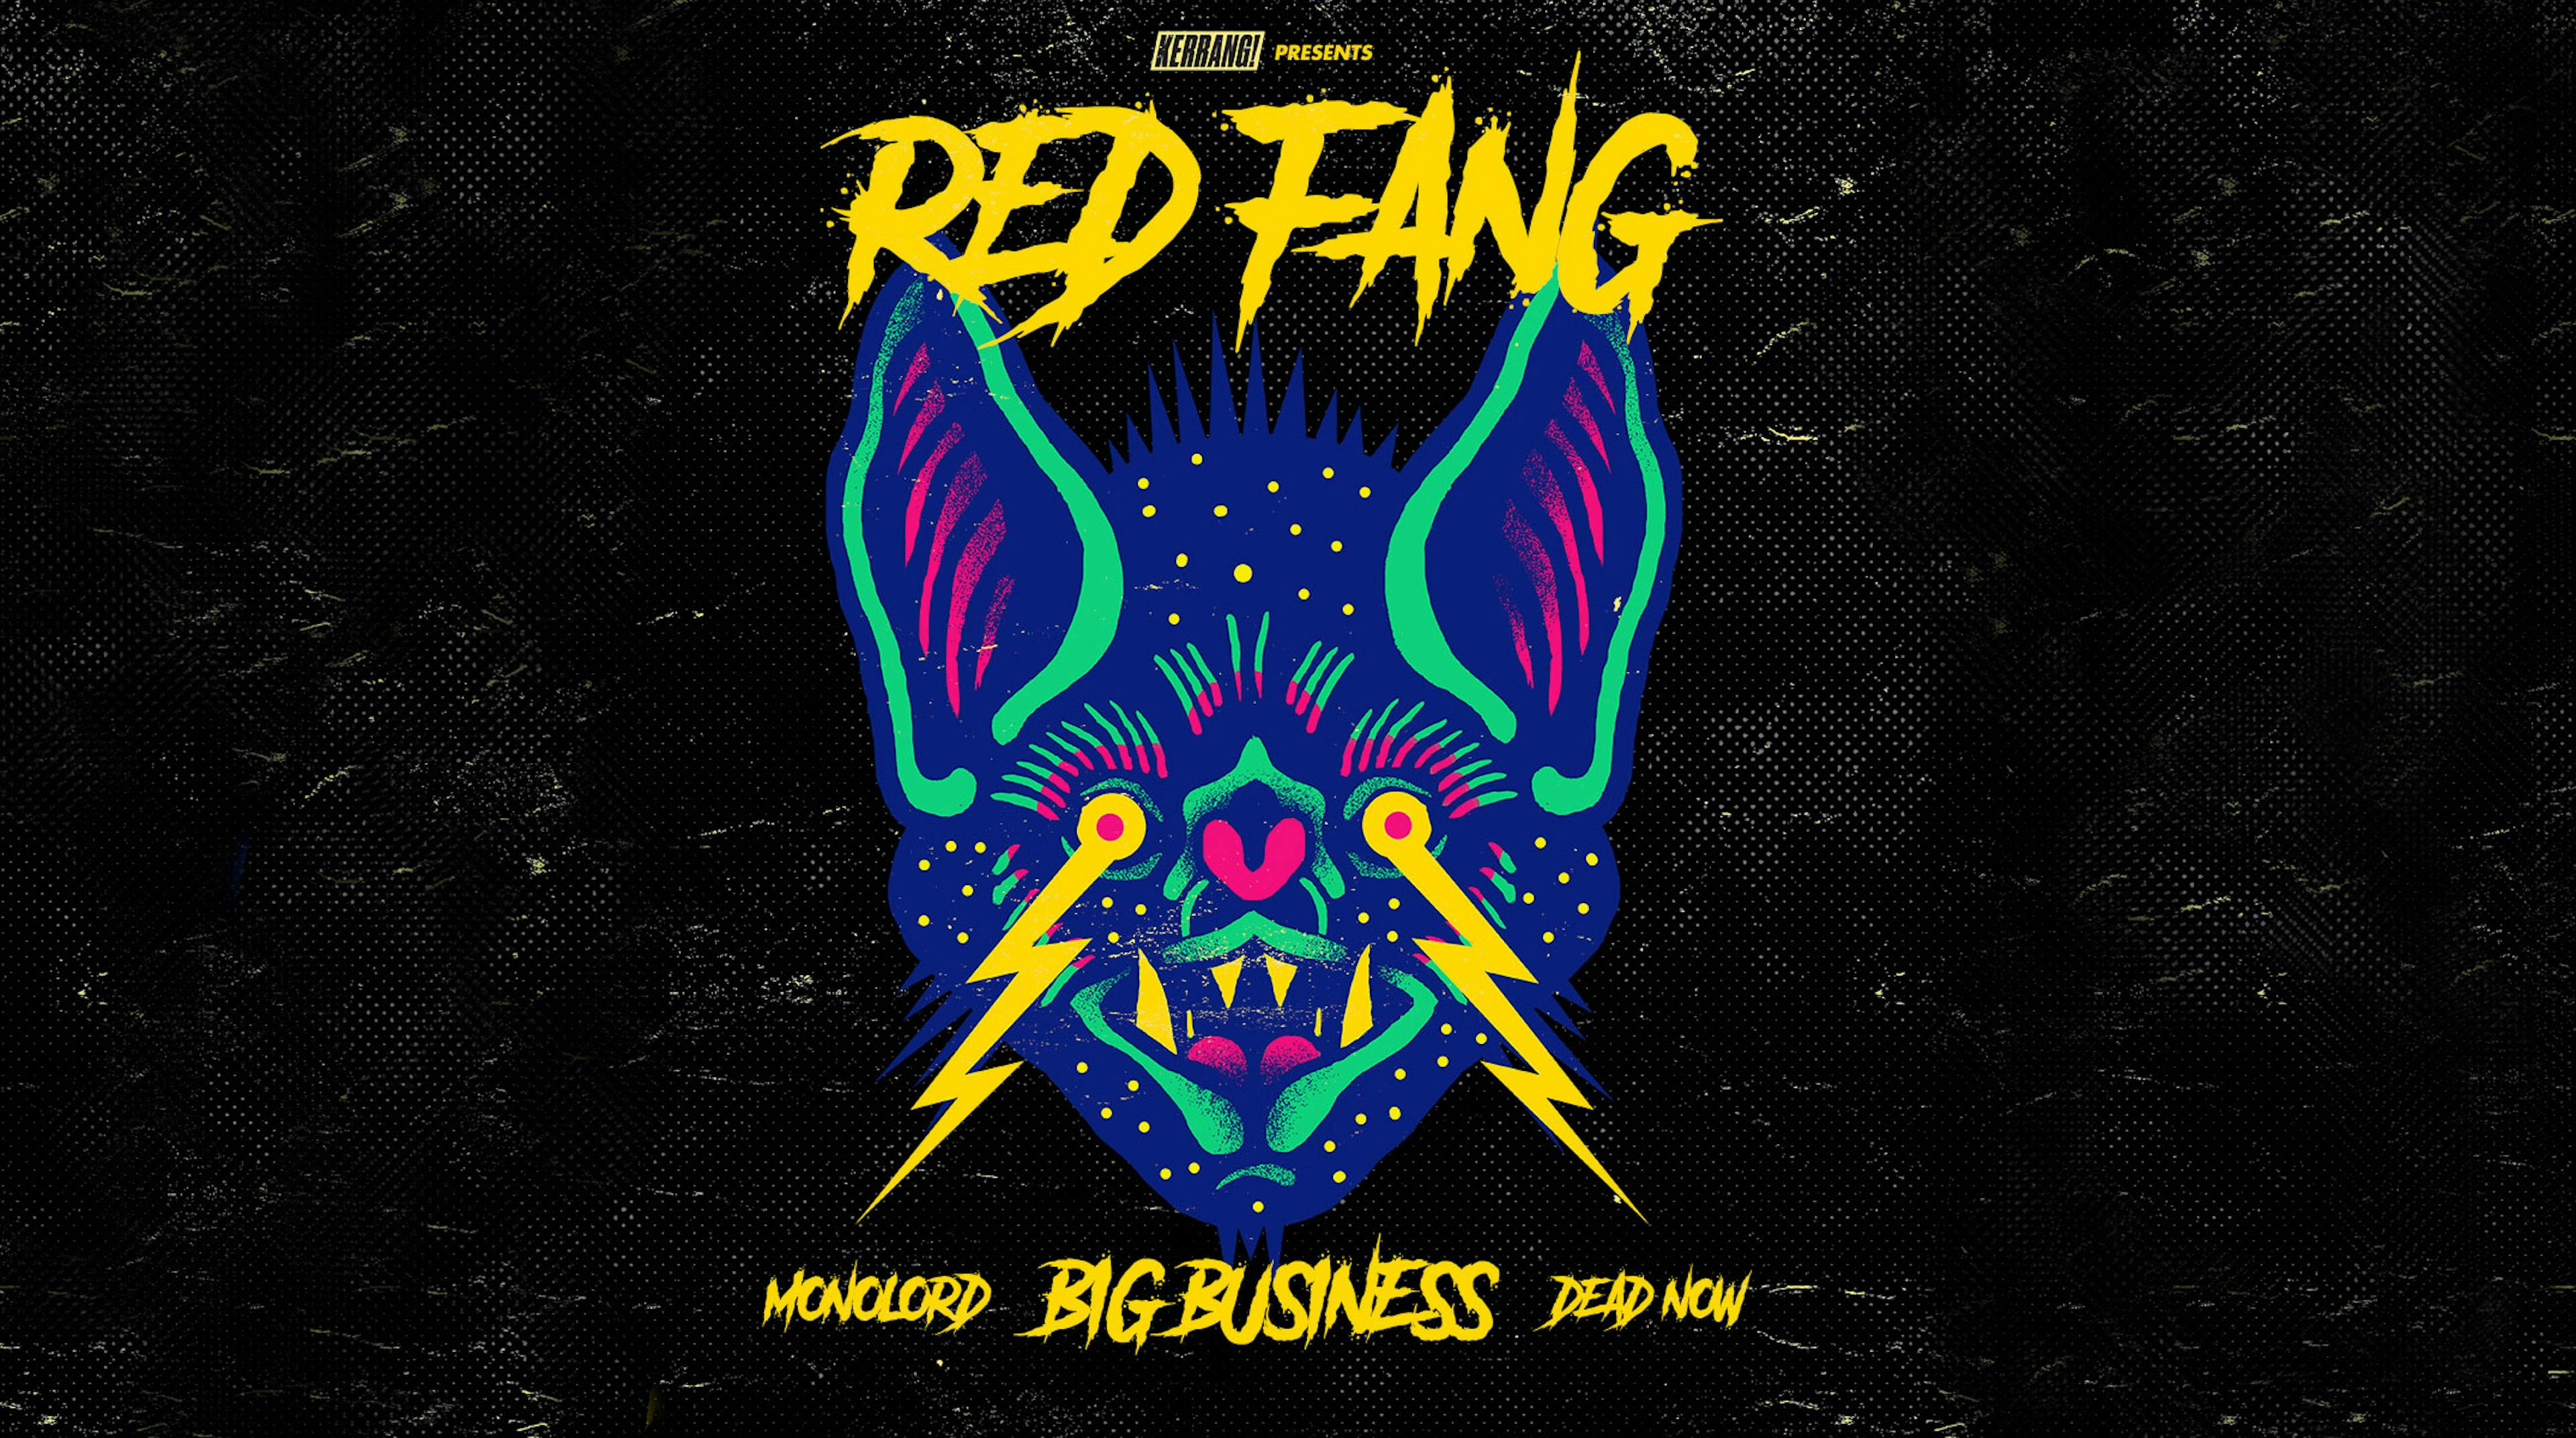 Red Fang & Kerrang! Announce U.S. Fall Tour